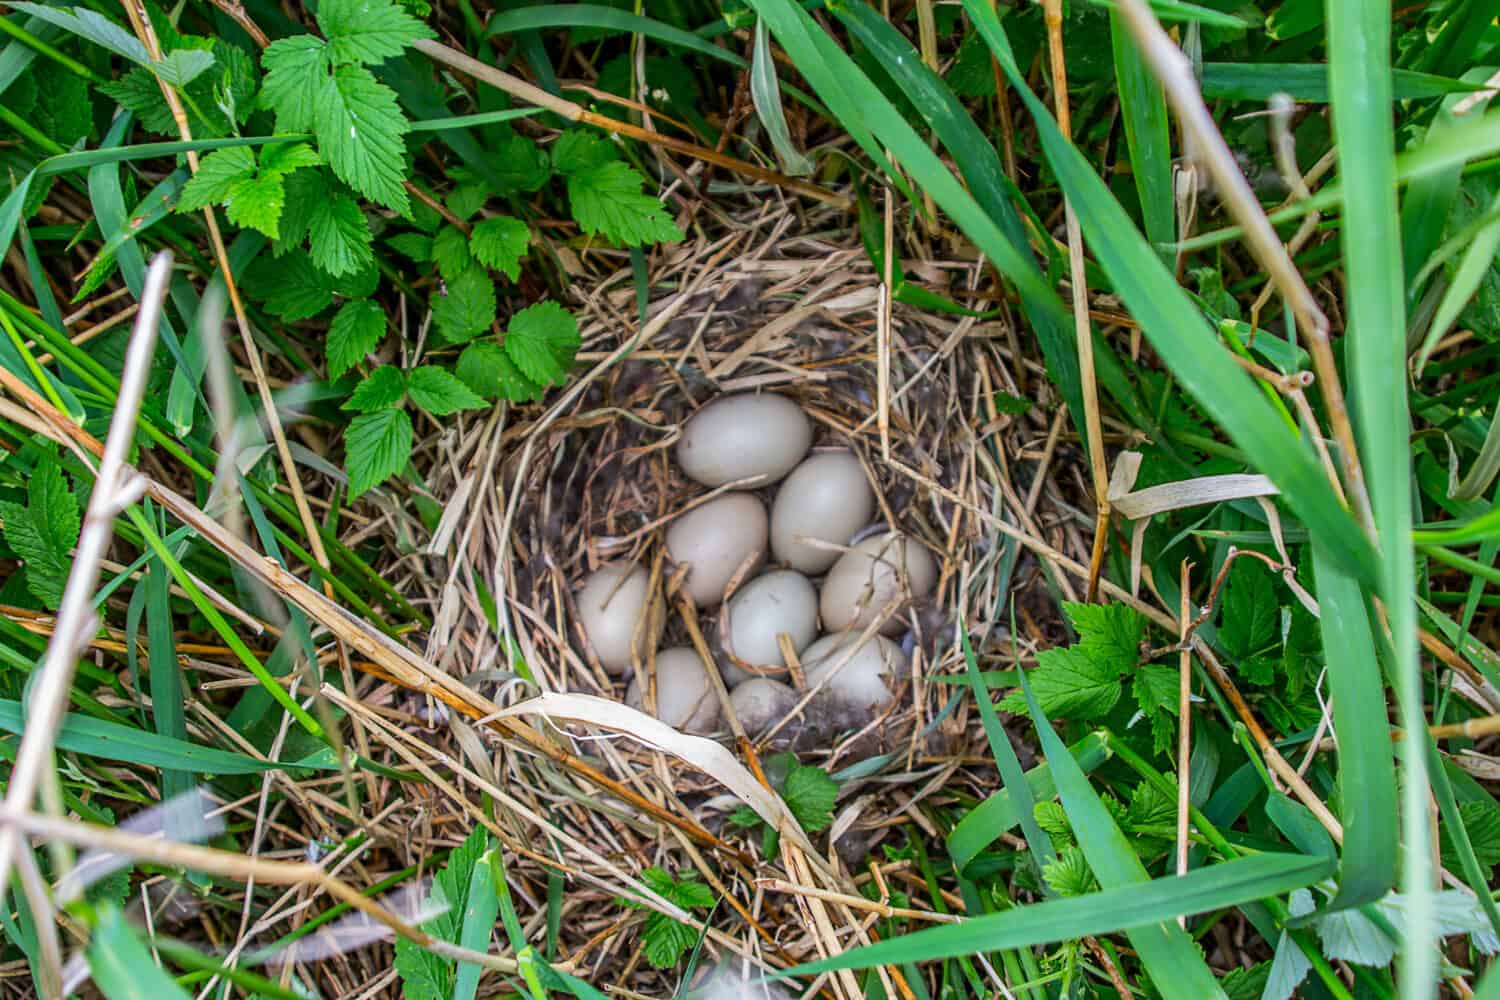 Guida ai nidi di uccelli.  La moretta (Aythya fuligula) nidifica sulle isole della parte orientale del Mar Baltico.  Piante vicine - cereali e lamponi.  Inizio dell'incubazione della nidiata, un po' di piumino nel nido